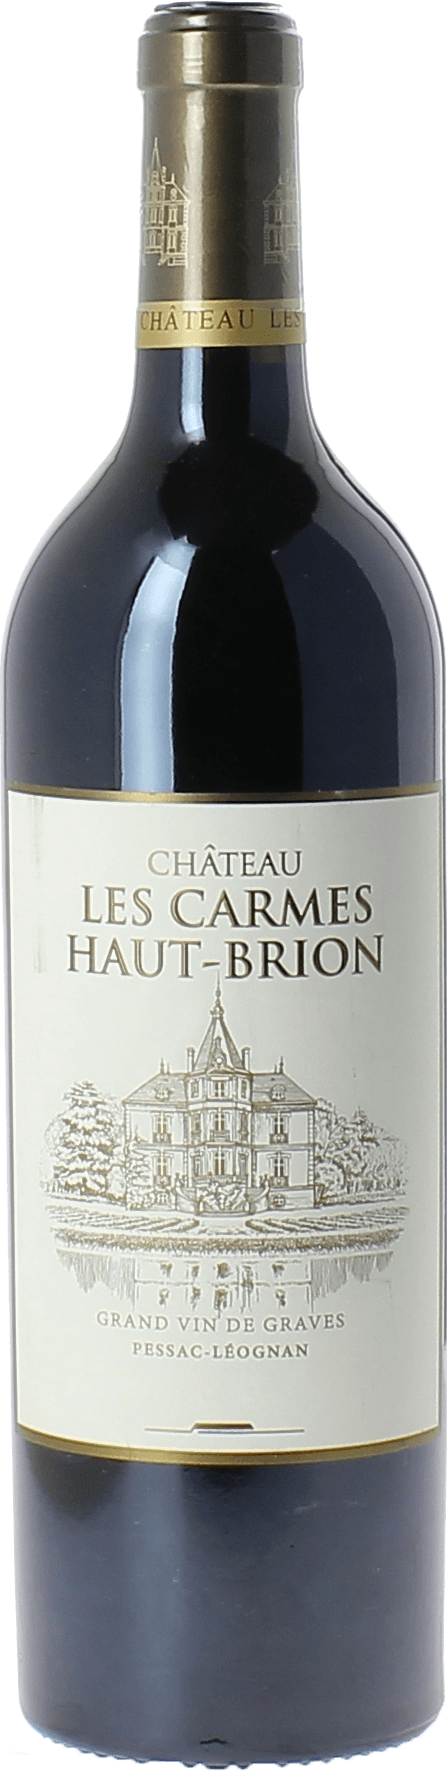 Carmes haut brion 2015 cru class Pessac-Lognan, Bordeaux rouge